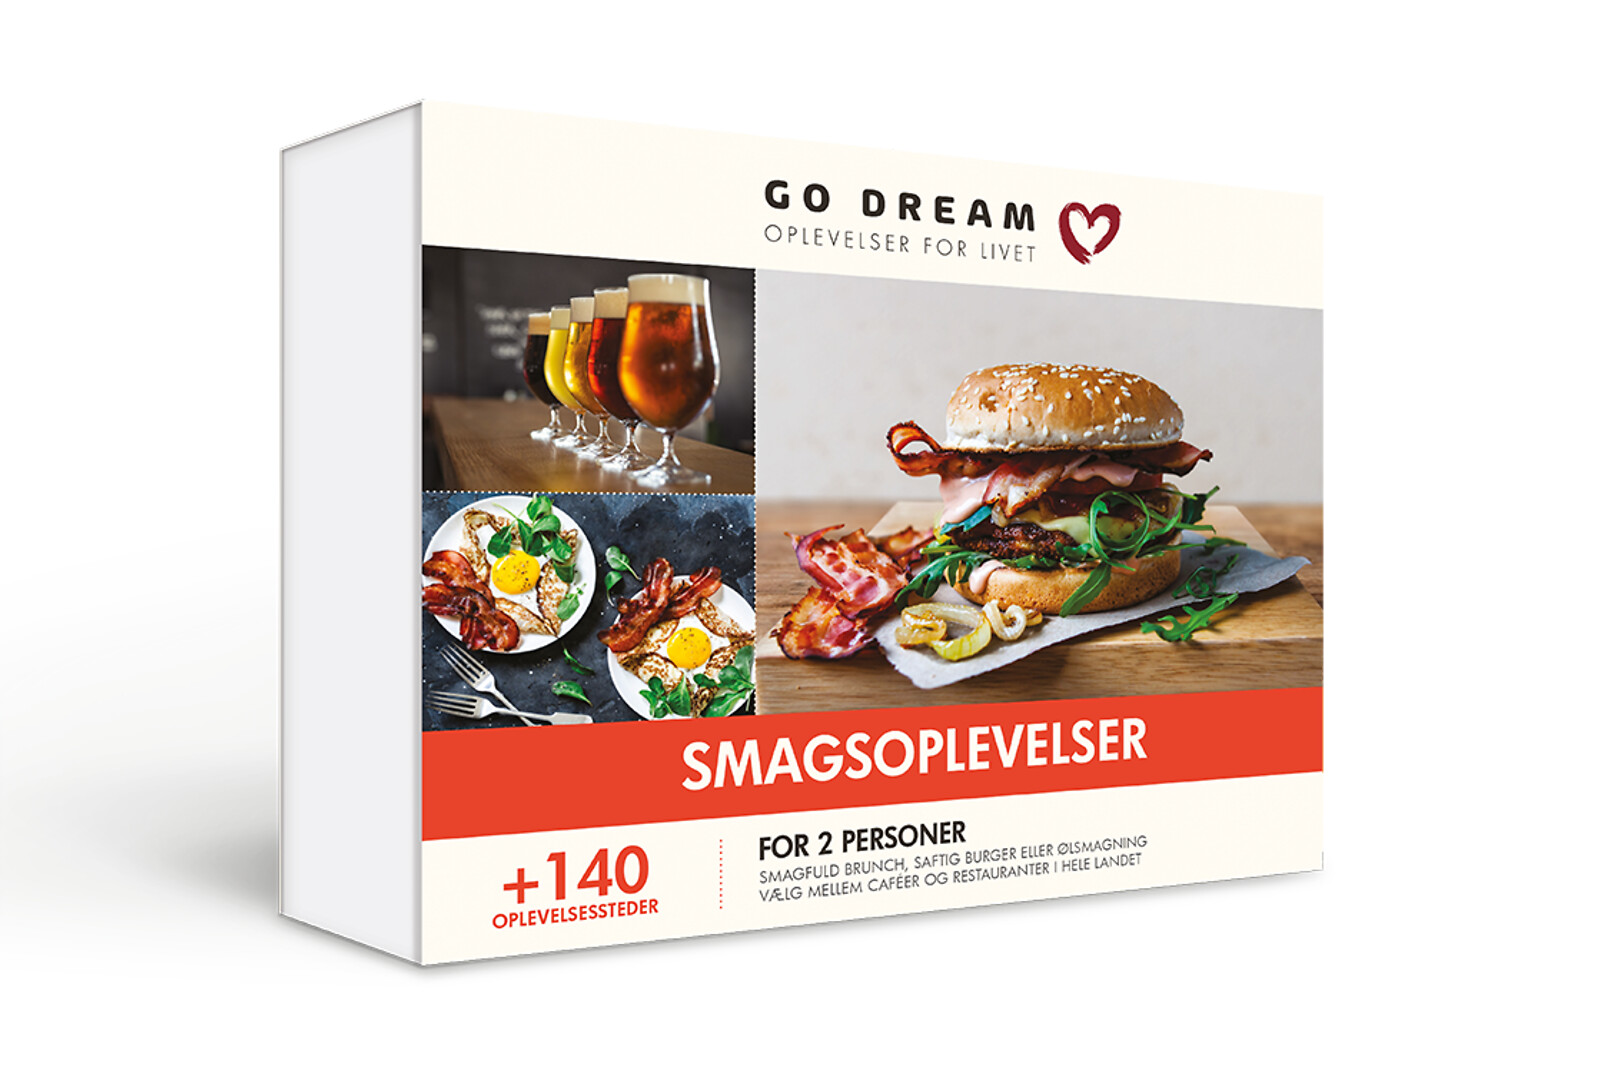 Billede af Smagsoplevelser - Mad og Gastronomi - GO DREAM